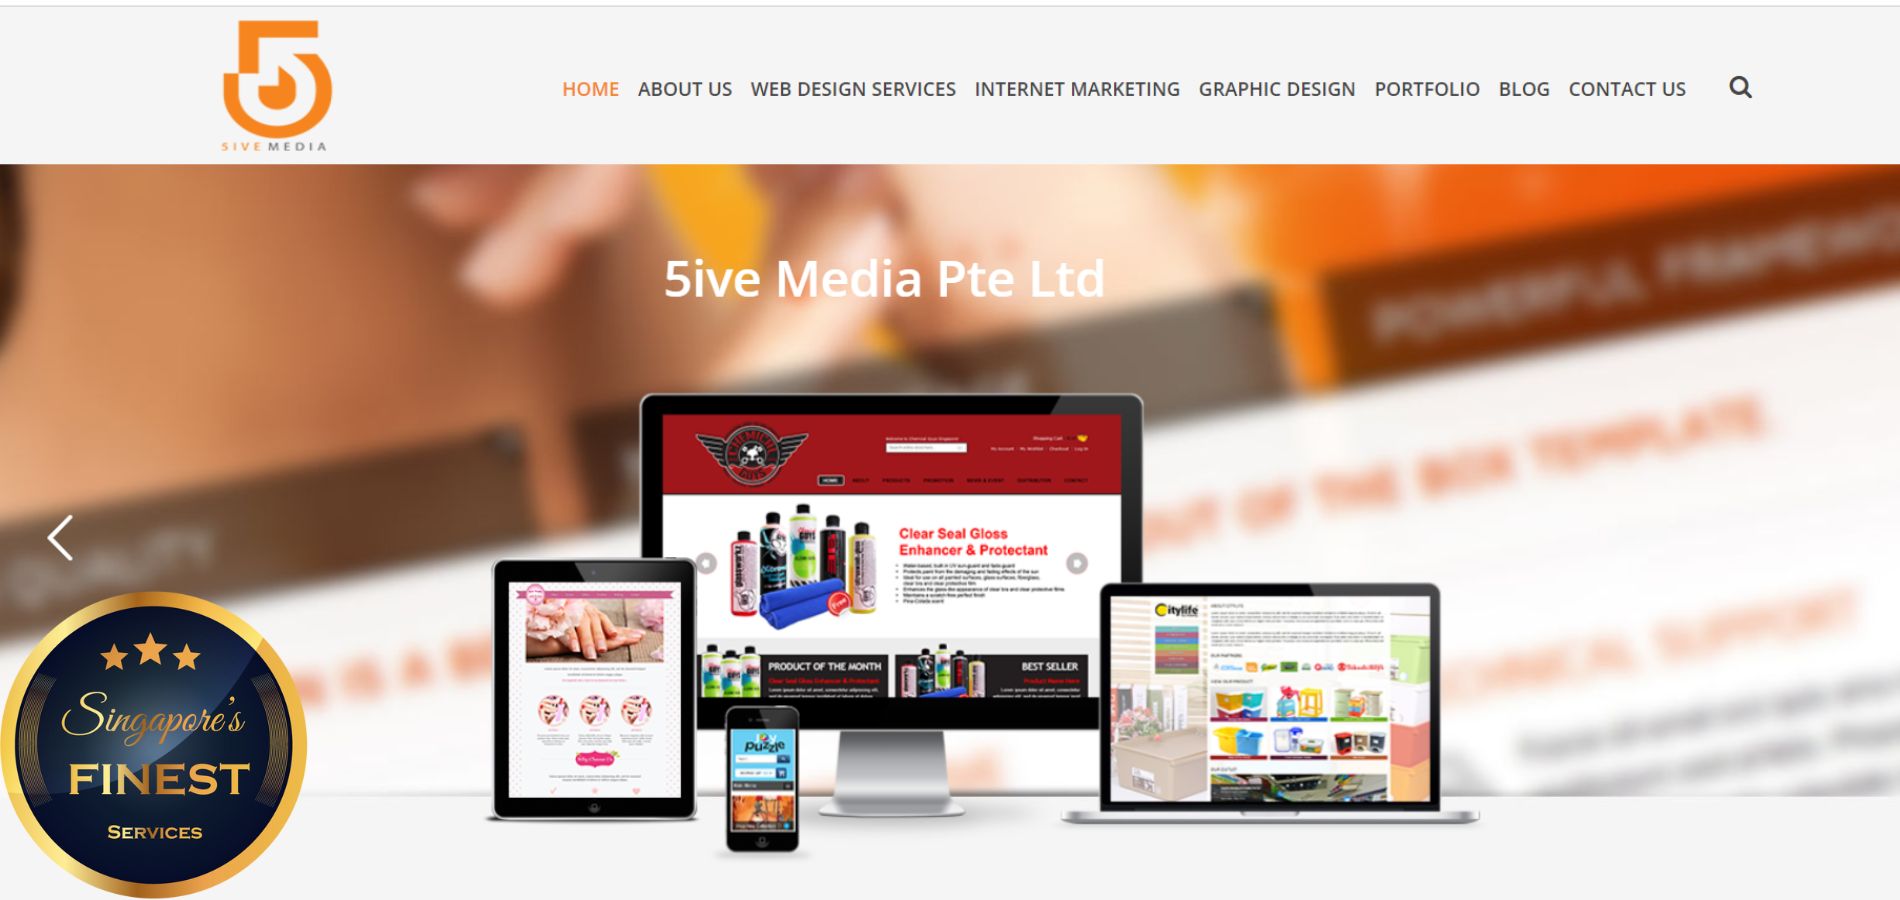 5ive Media Pte Ltd - Best Graphic Designer in Singapore